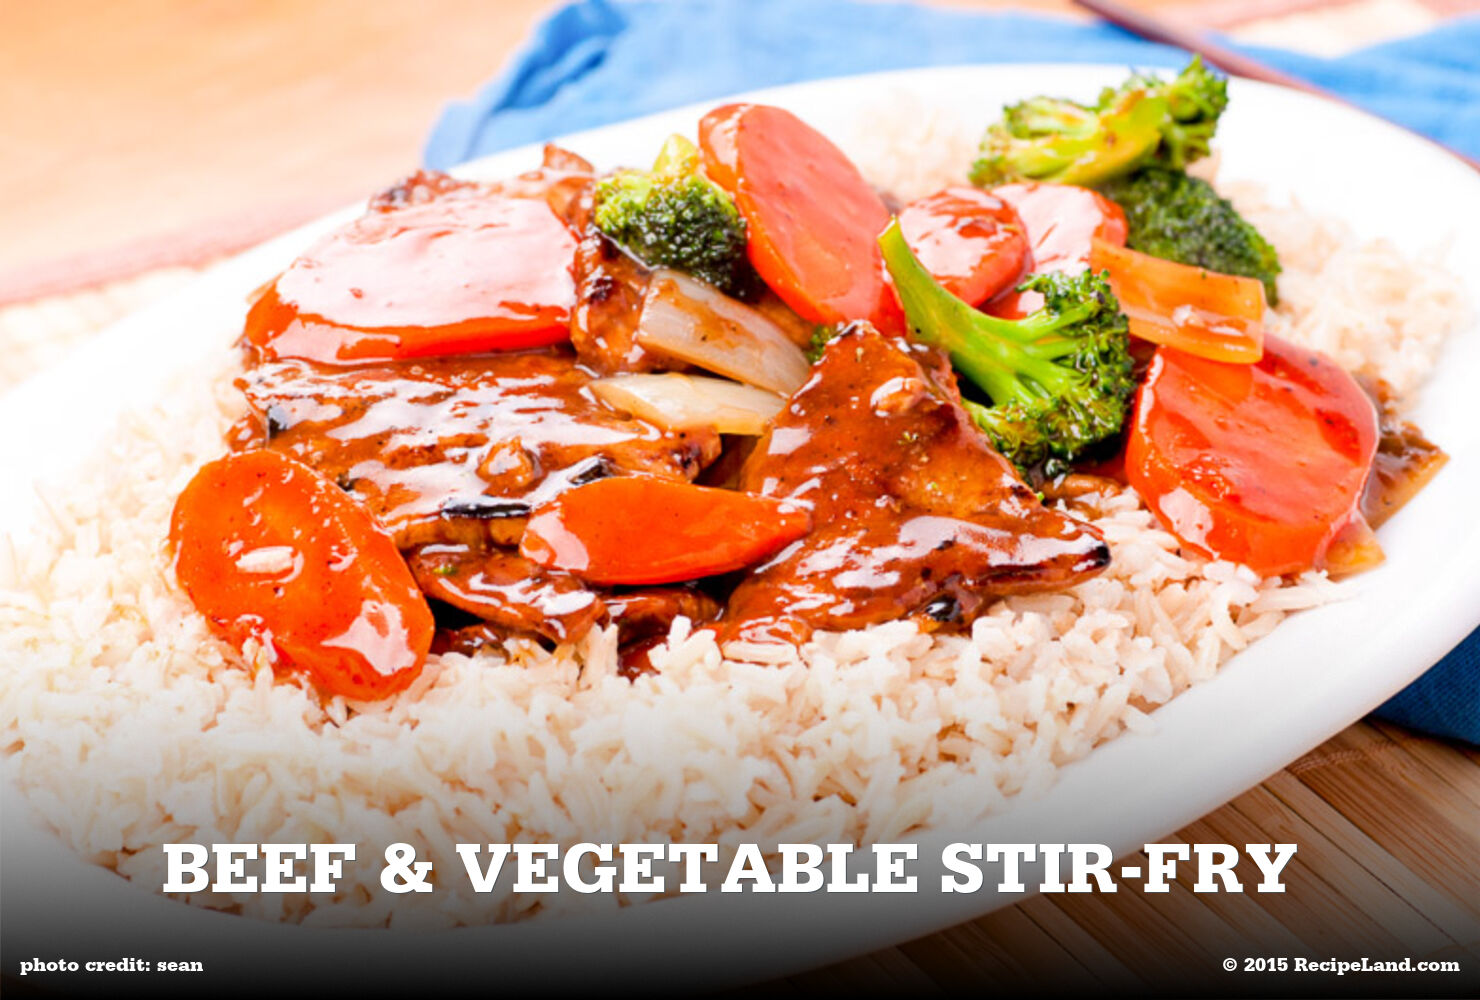 Beef & Vegetable Stir-Fry